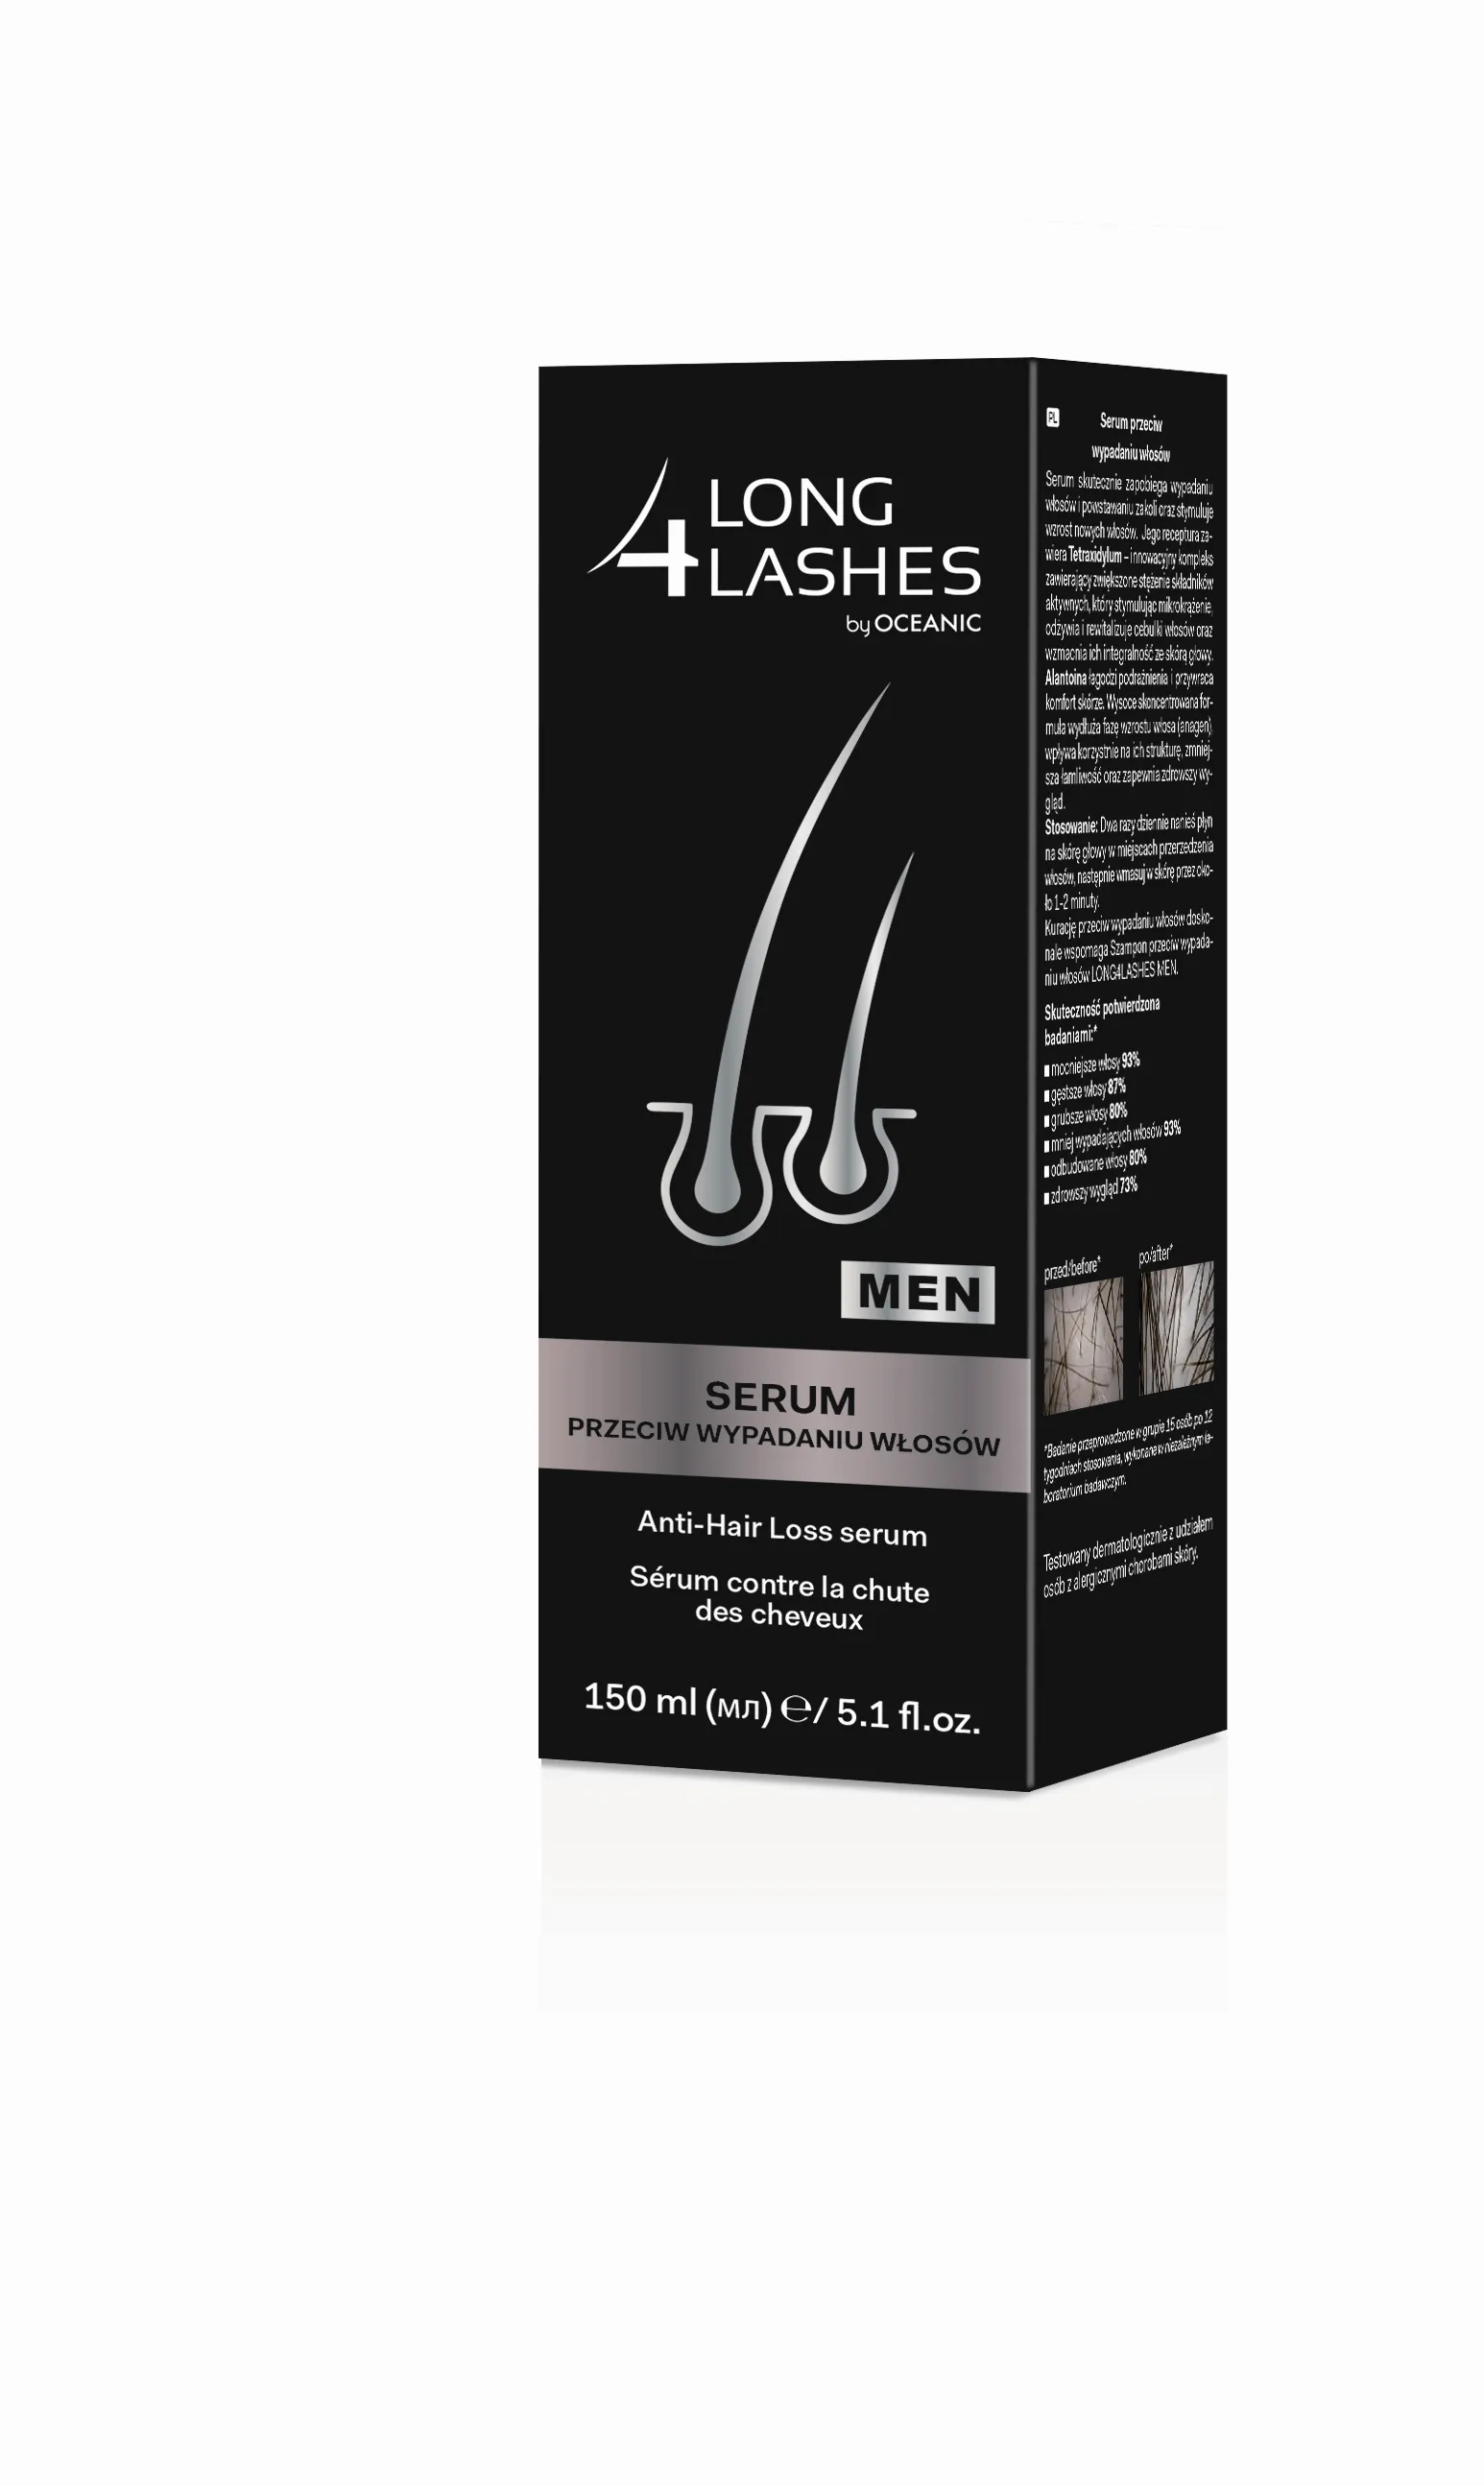 Long 4 Lashes Men, serum przeciw wypadaniu włosów, 150 ml